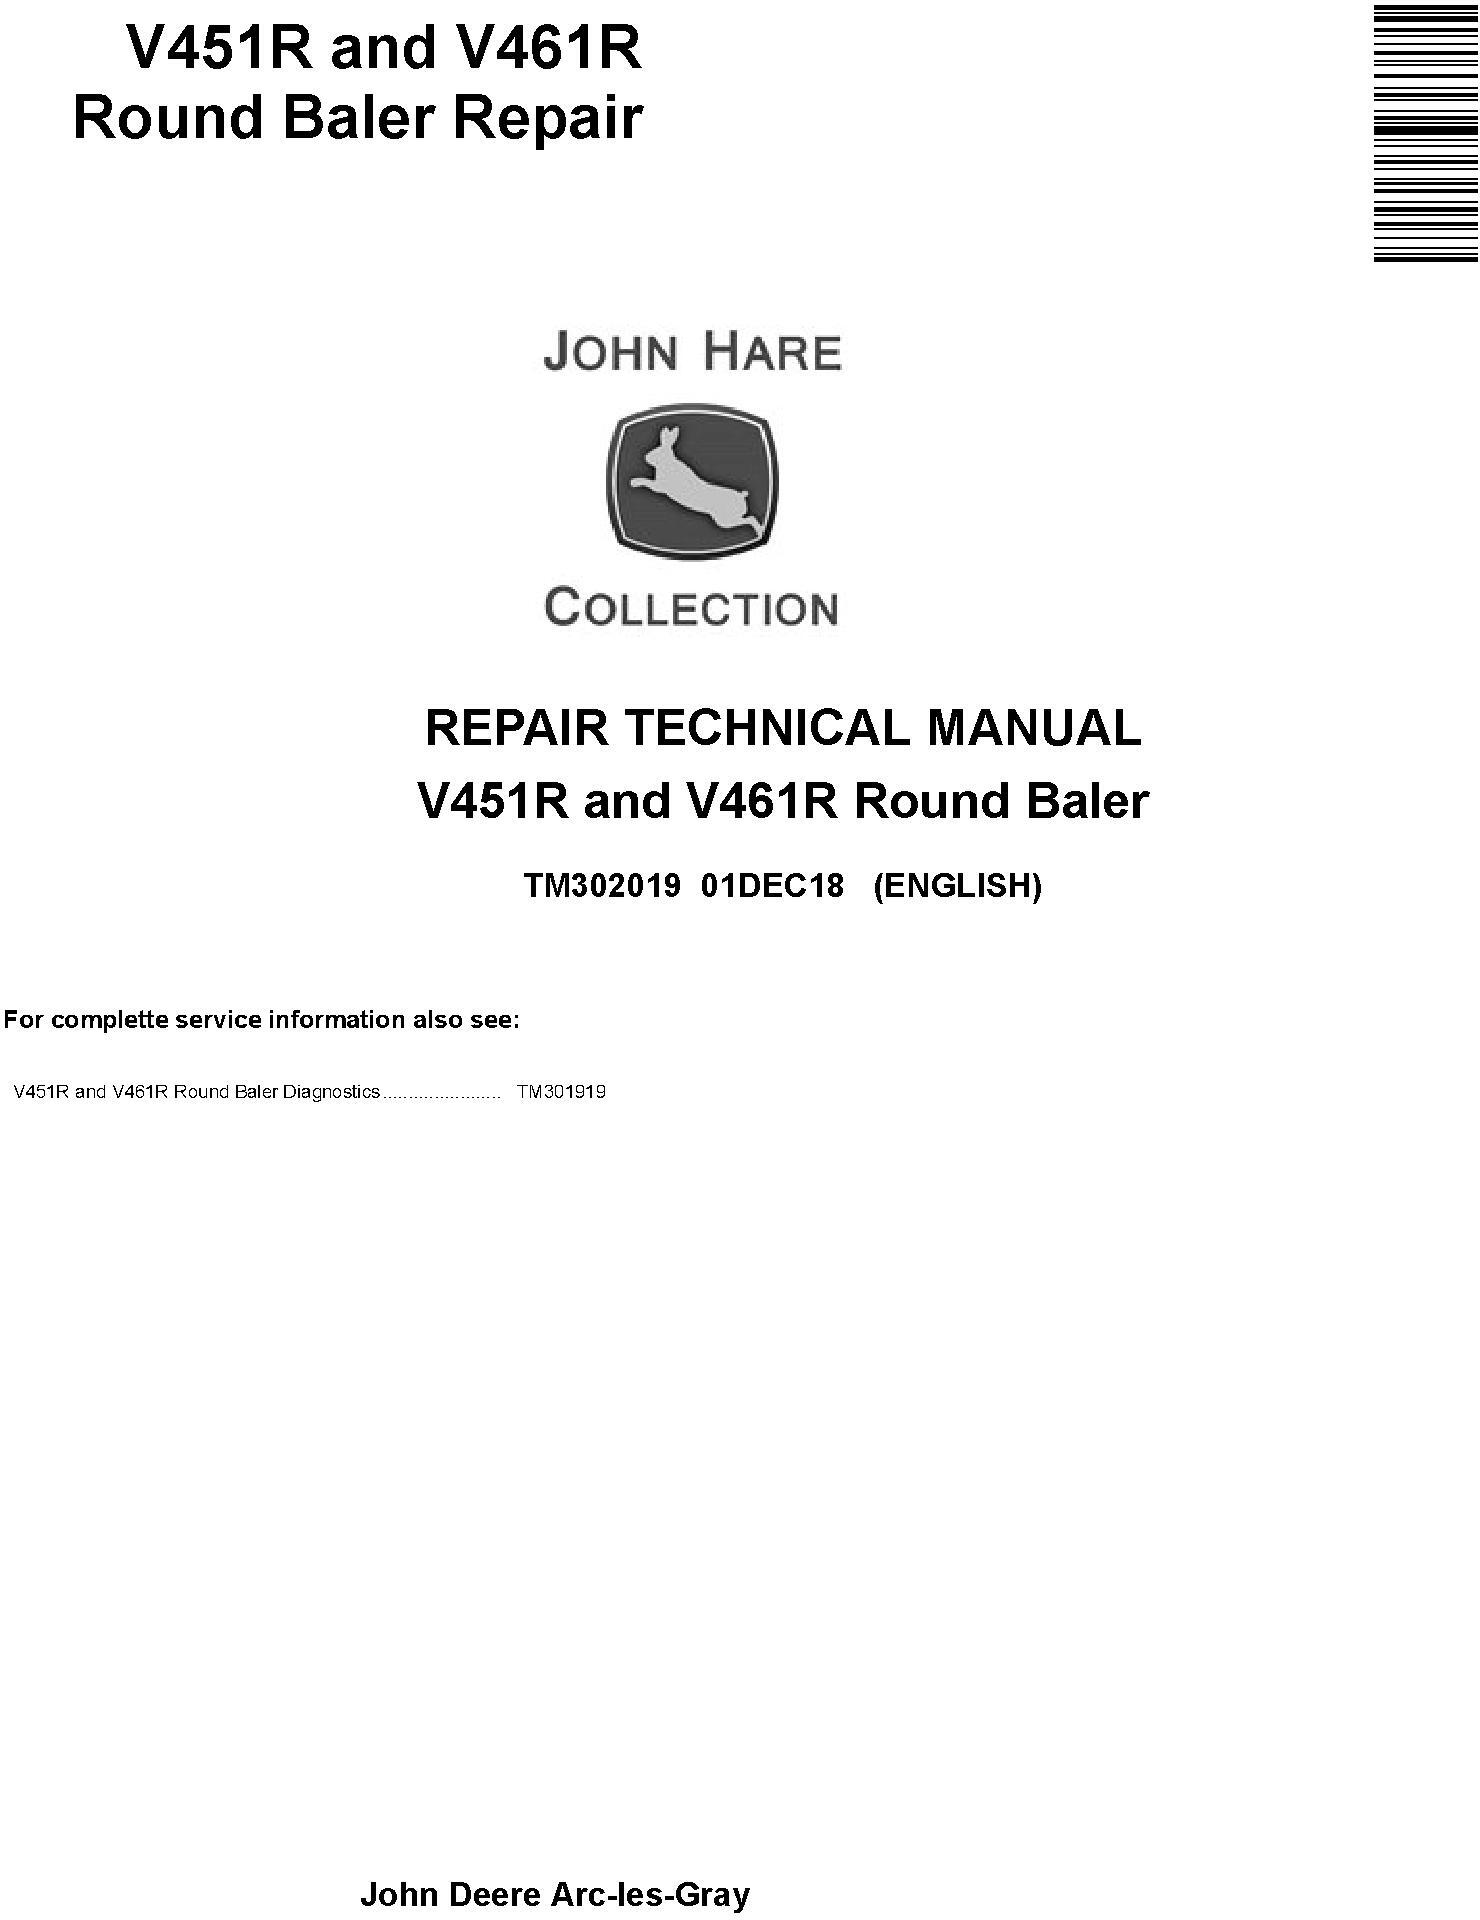 John Deere V451R V461R Round Baler Repair Technical Manual TM302019